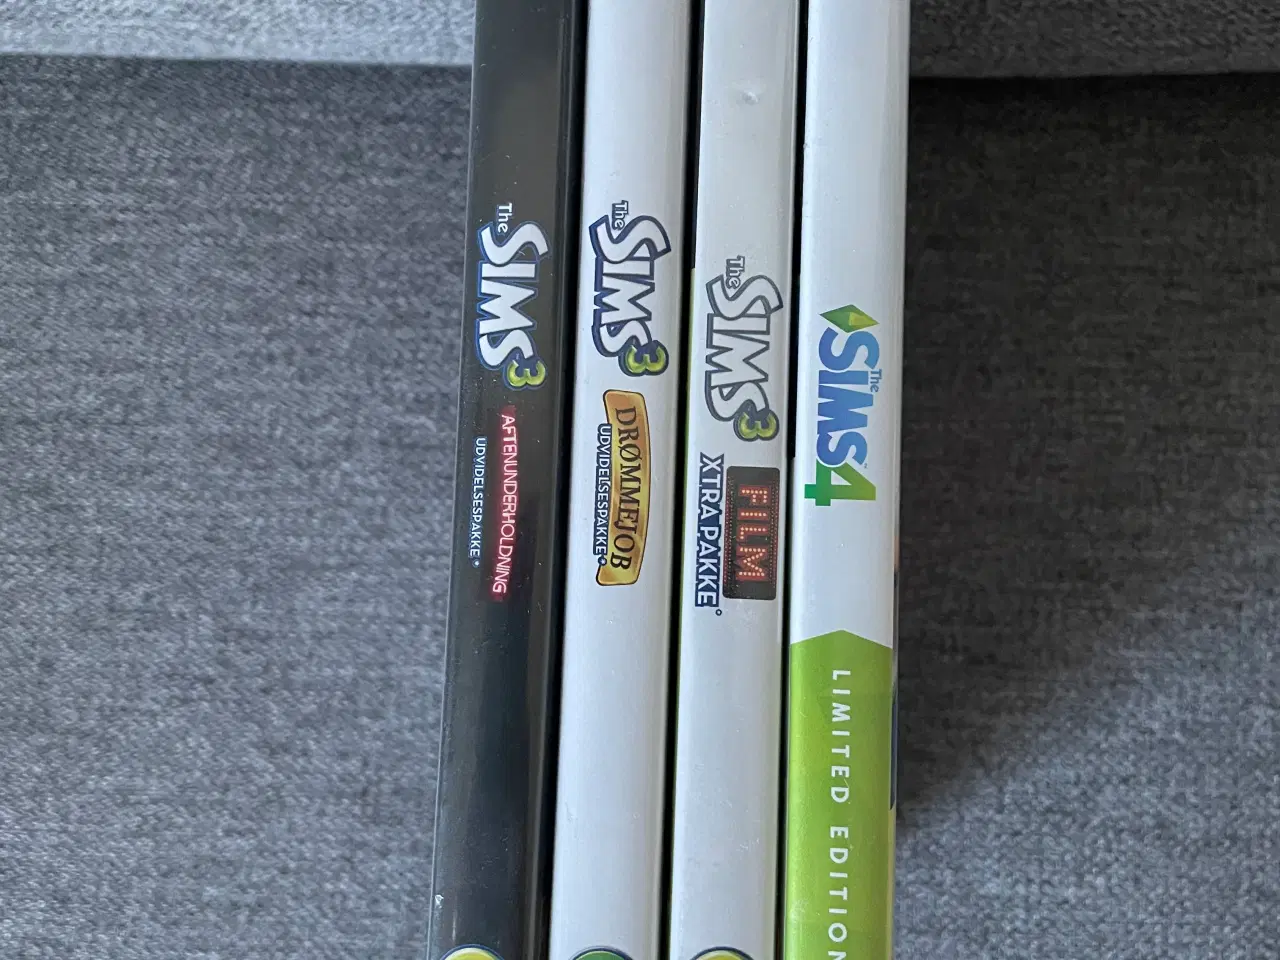 Billede 2 - 3 stk. The Sims 3 spil og 1. The Sims 4, rollespil